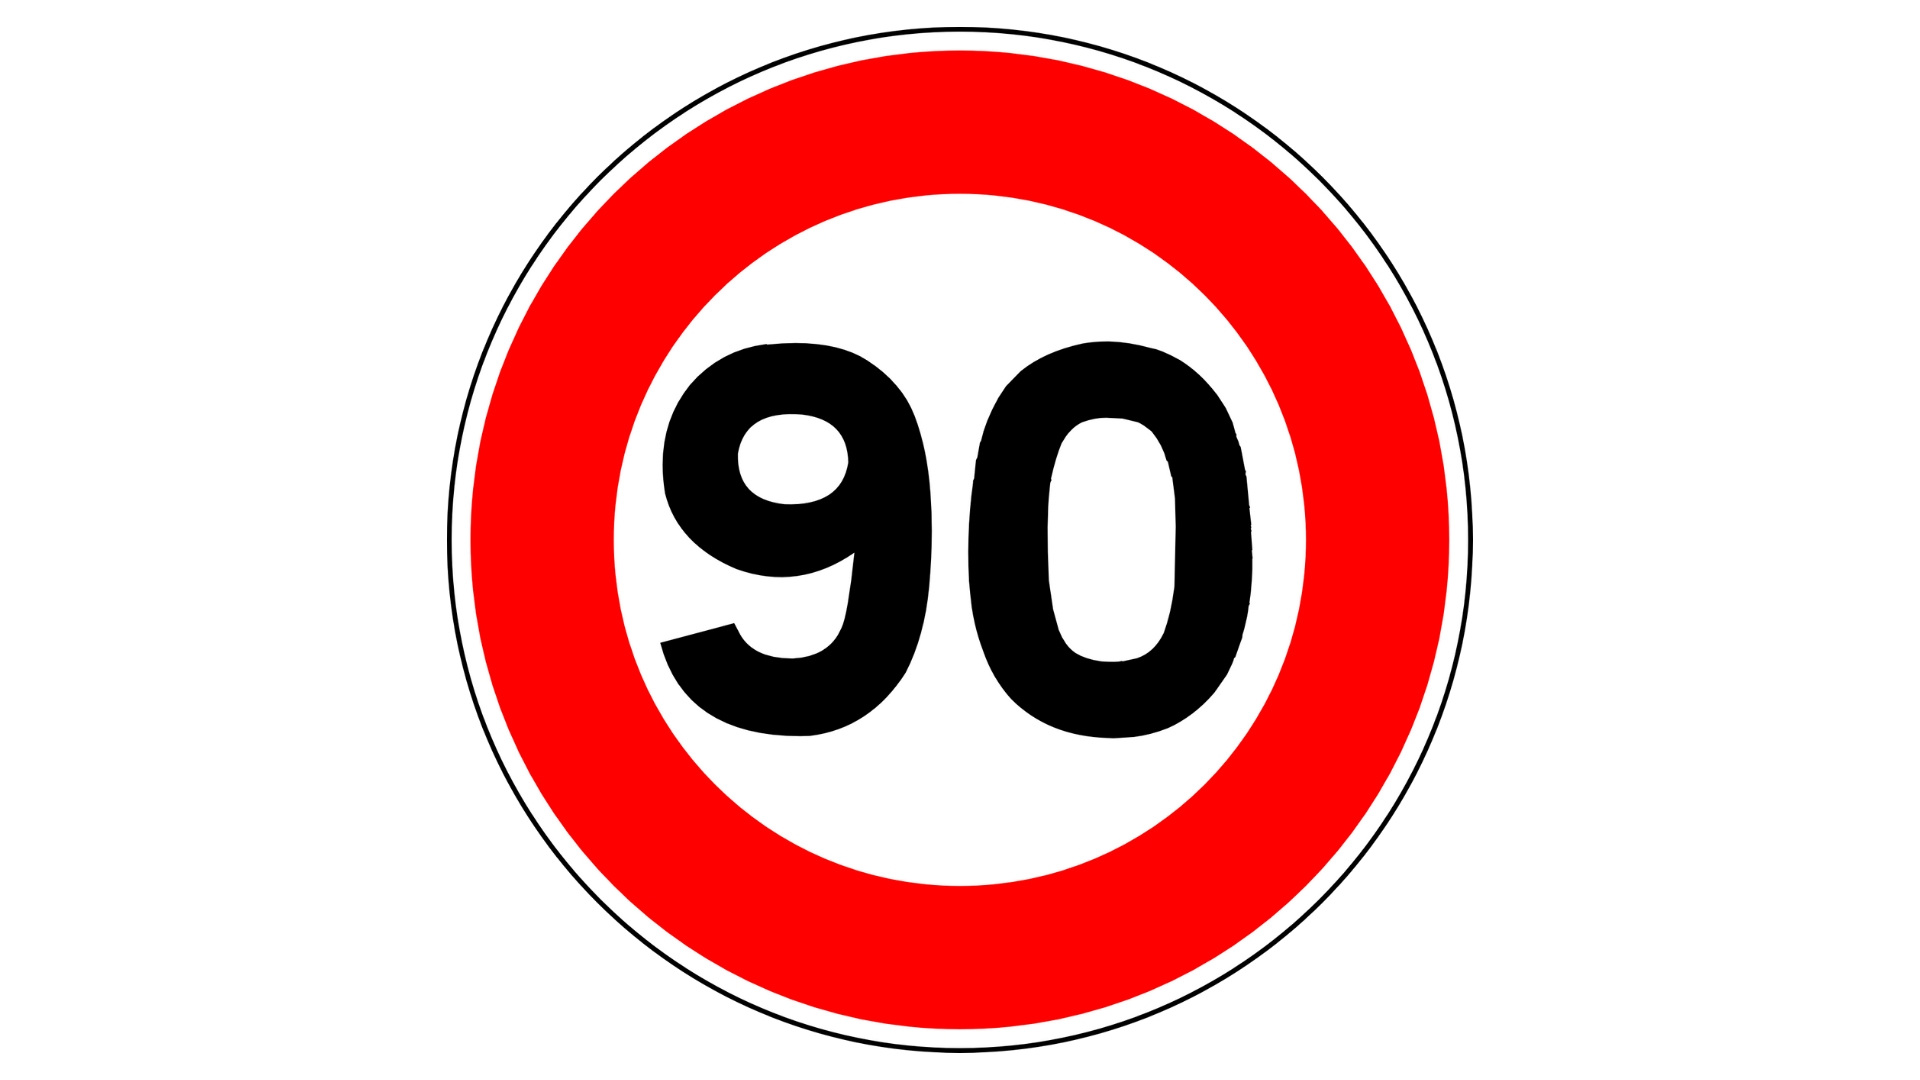 La reducción de velocidad a 90 kmhen las carreteras convencionales entra en vigor este martes 29 de enero1920